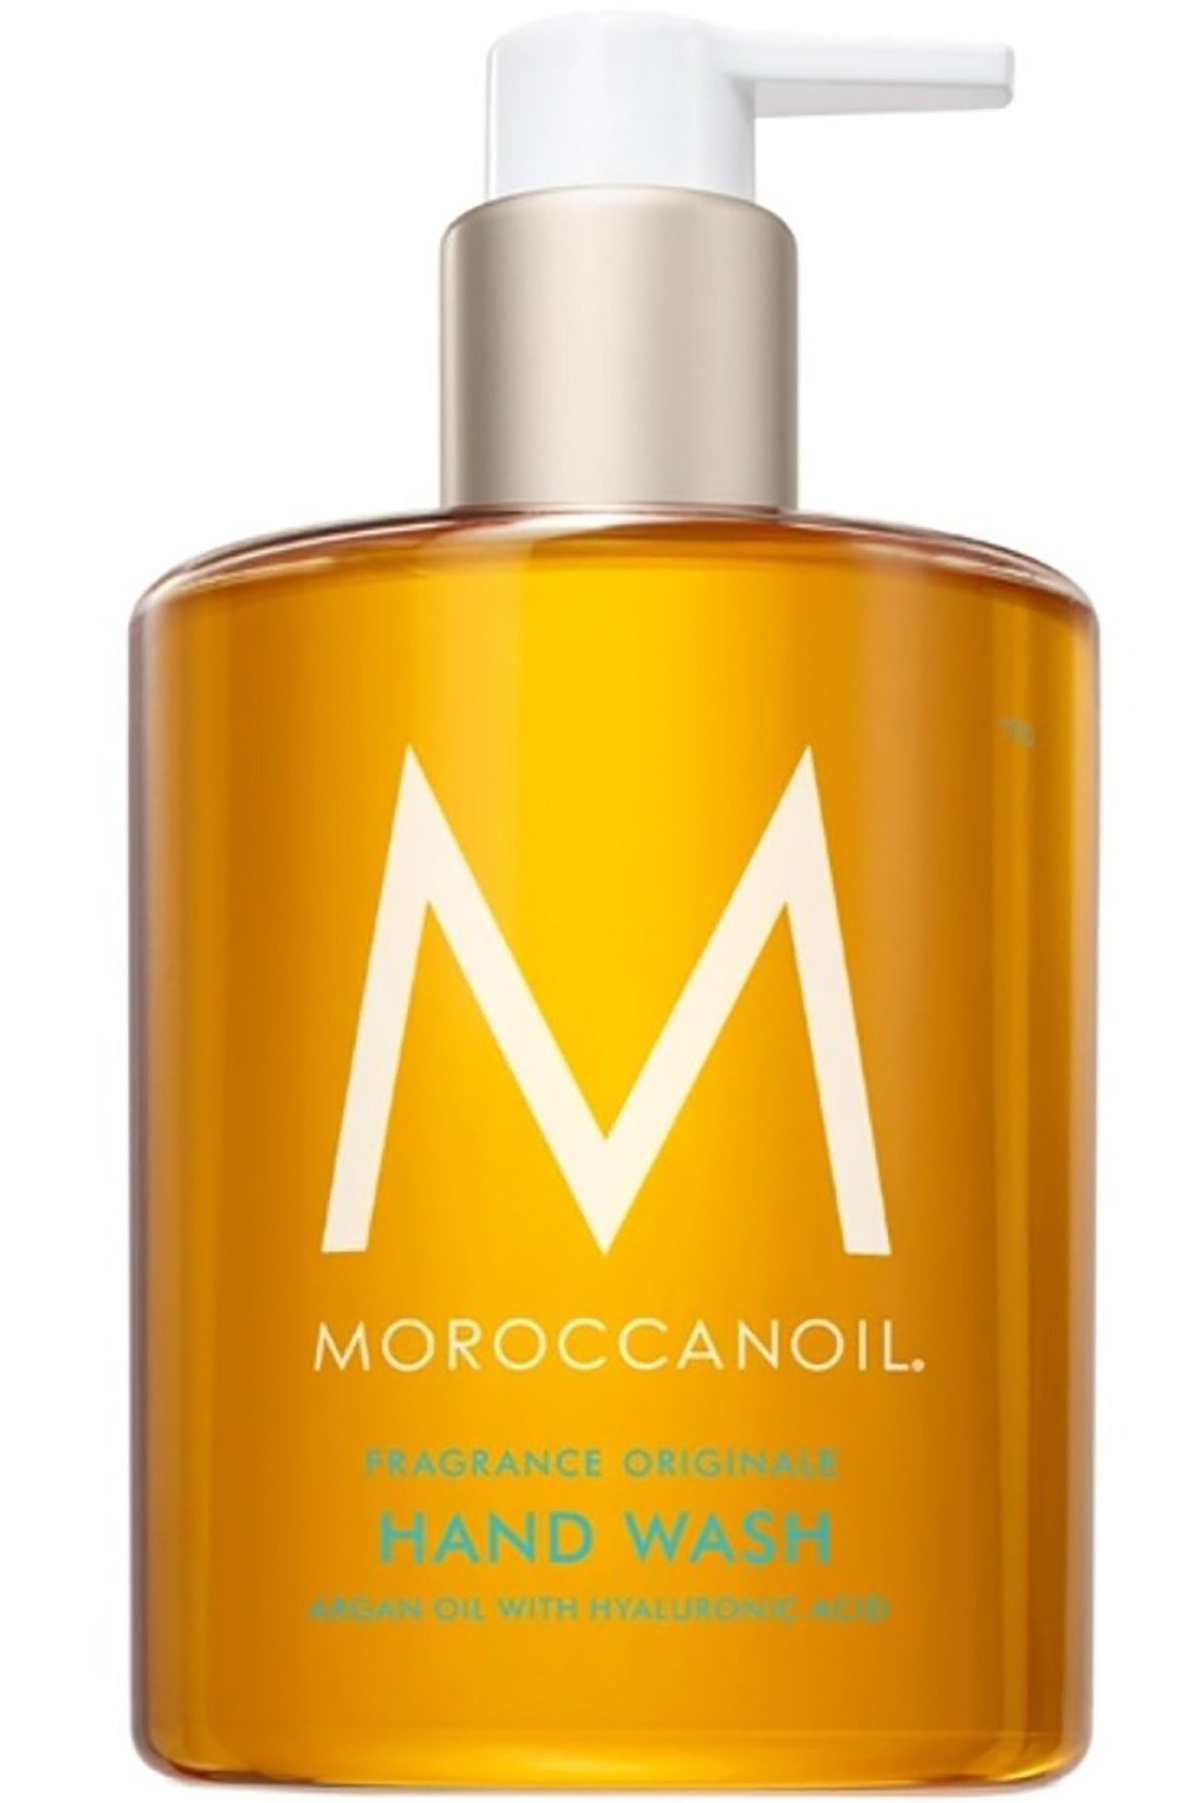 Moroccanoil Hand Wash (fragrance Originale)